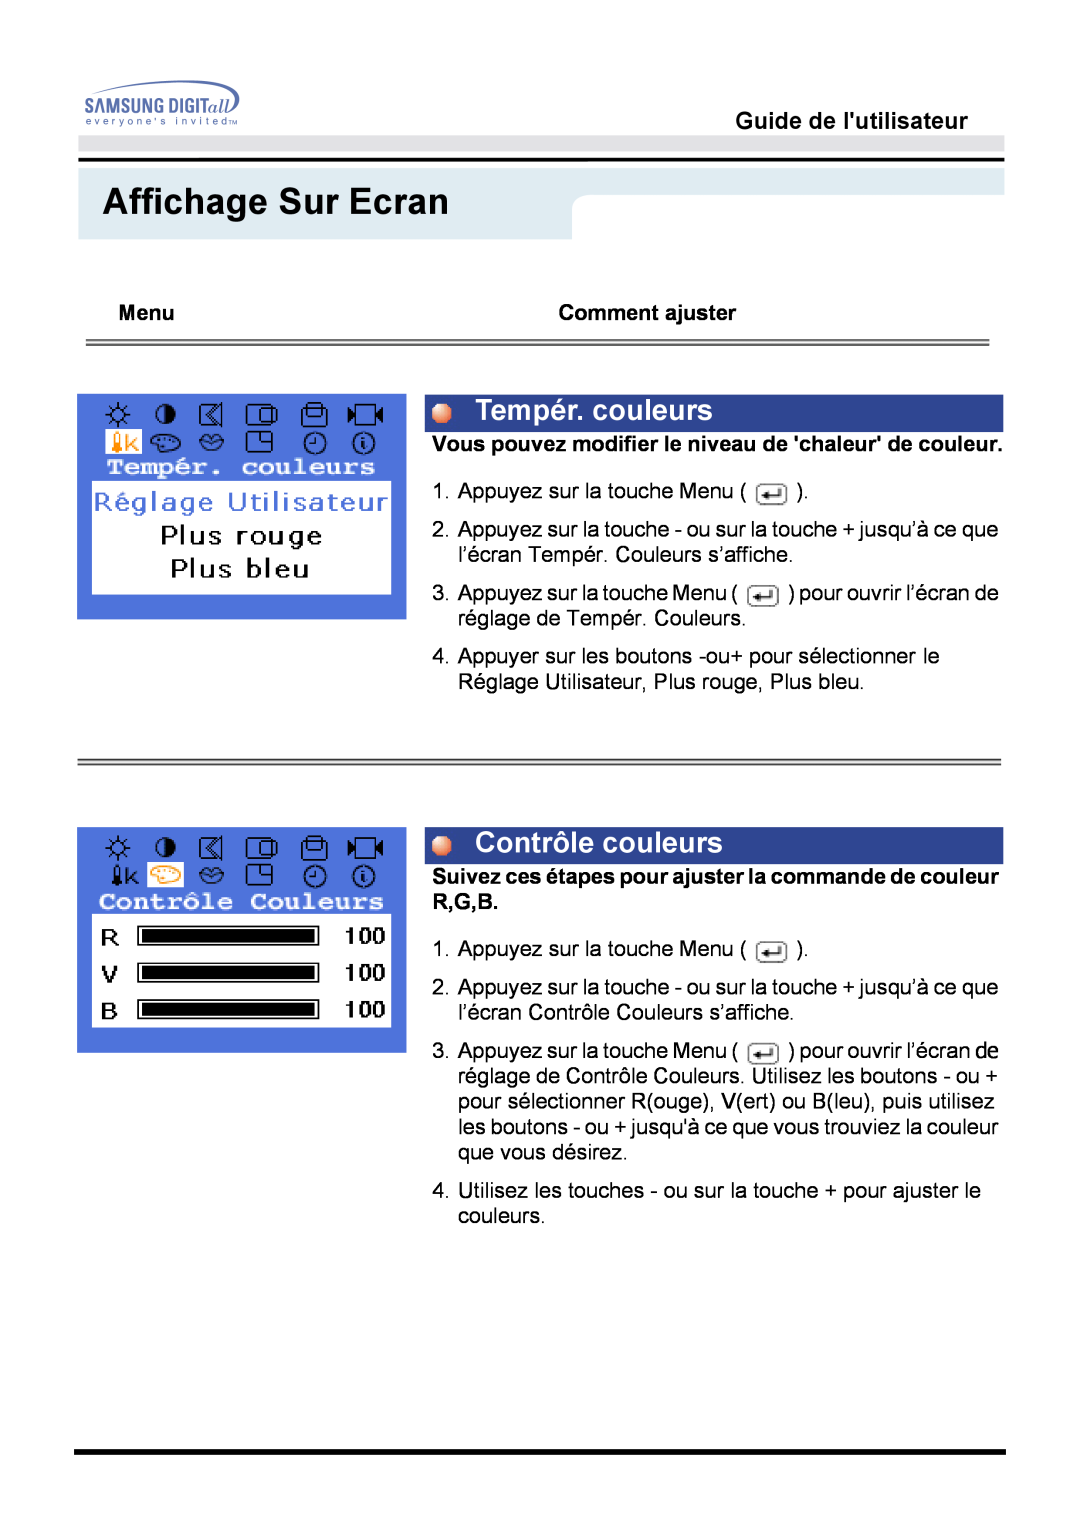 Samsung GG15MSAS/EDC, GH15MSSS/EDC manual Tempér. couleurs, Contrôle couleurs, Affichage Sur Ecran, Guide de lutilisateur 